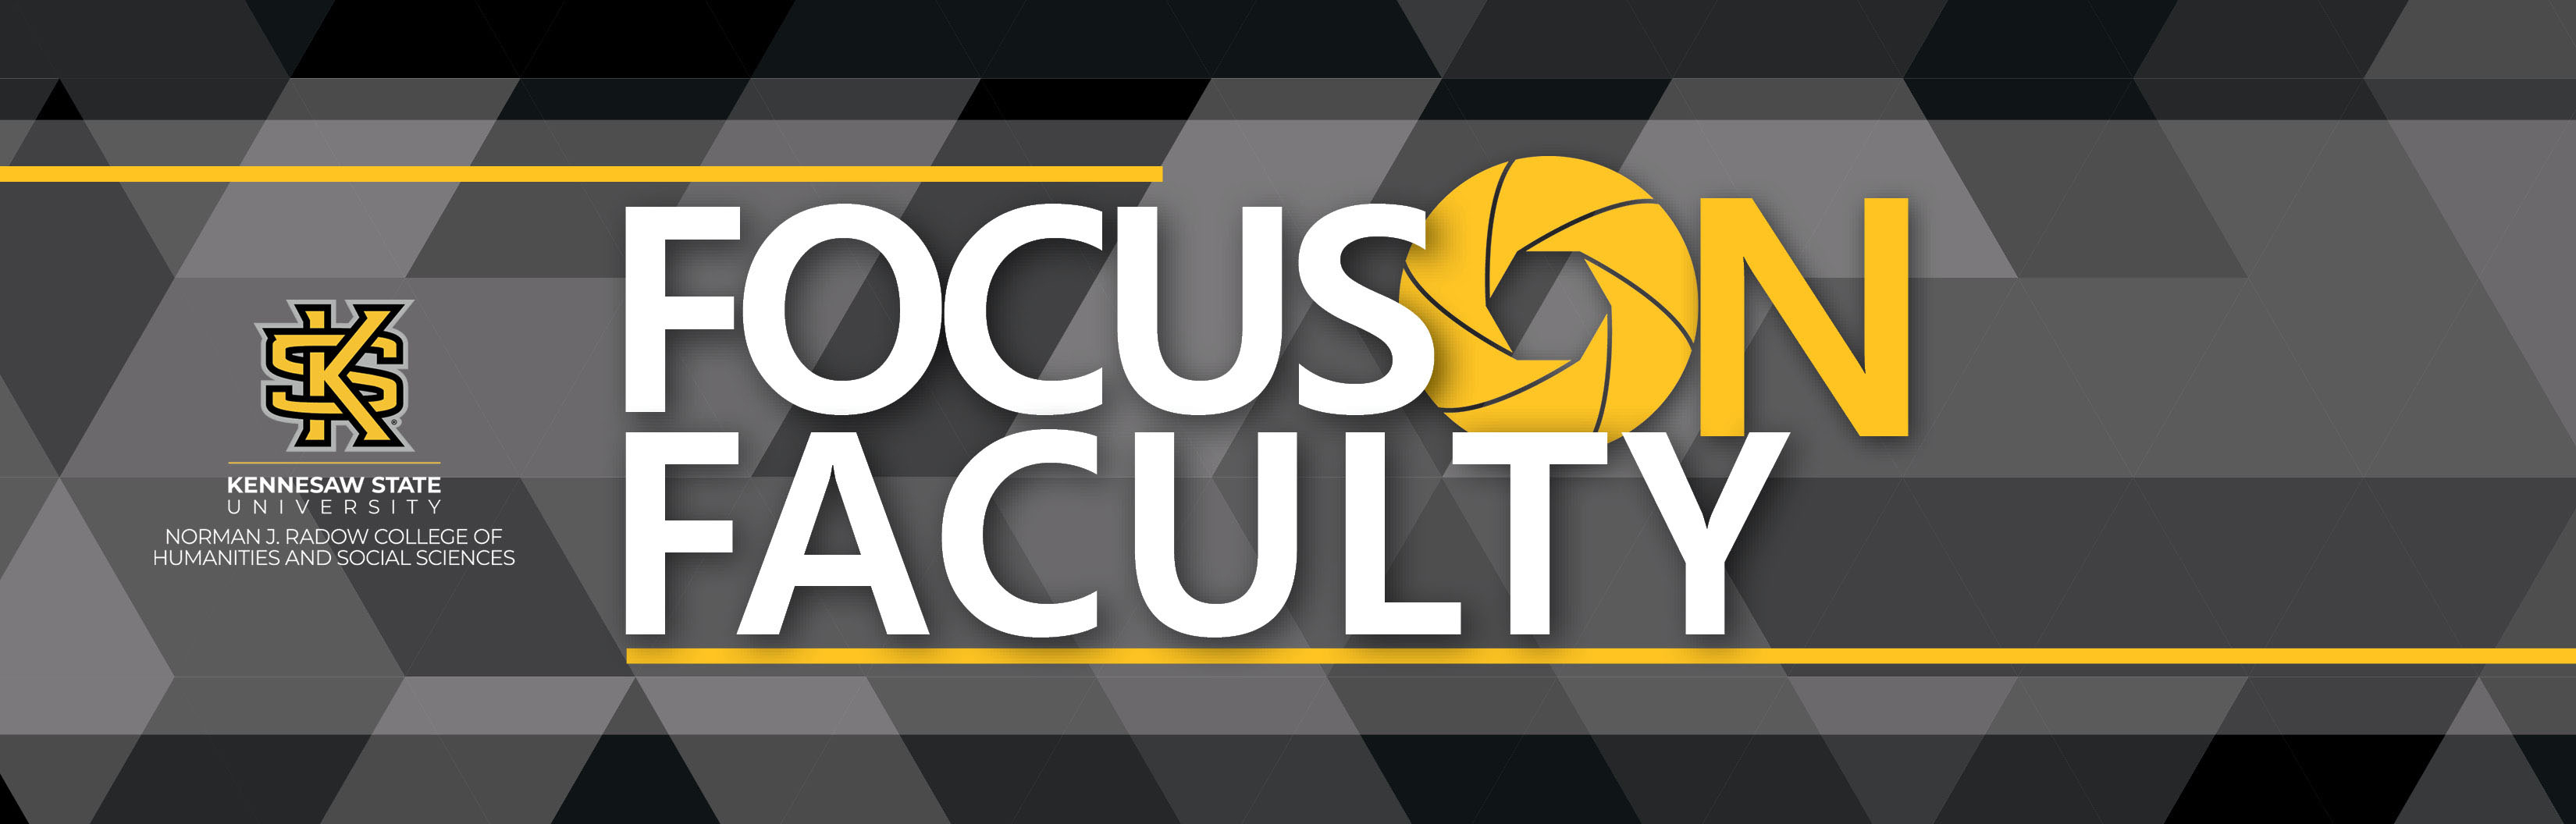 Focus on Faculty